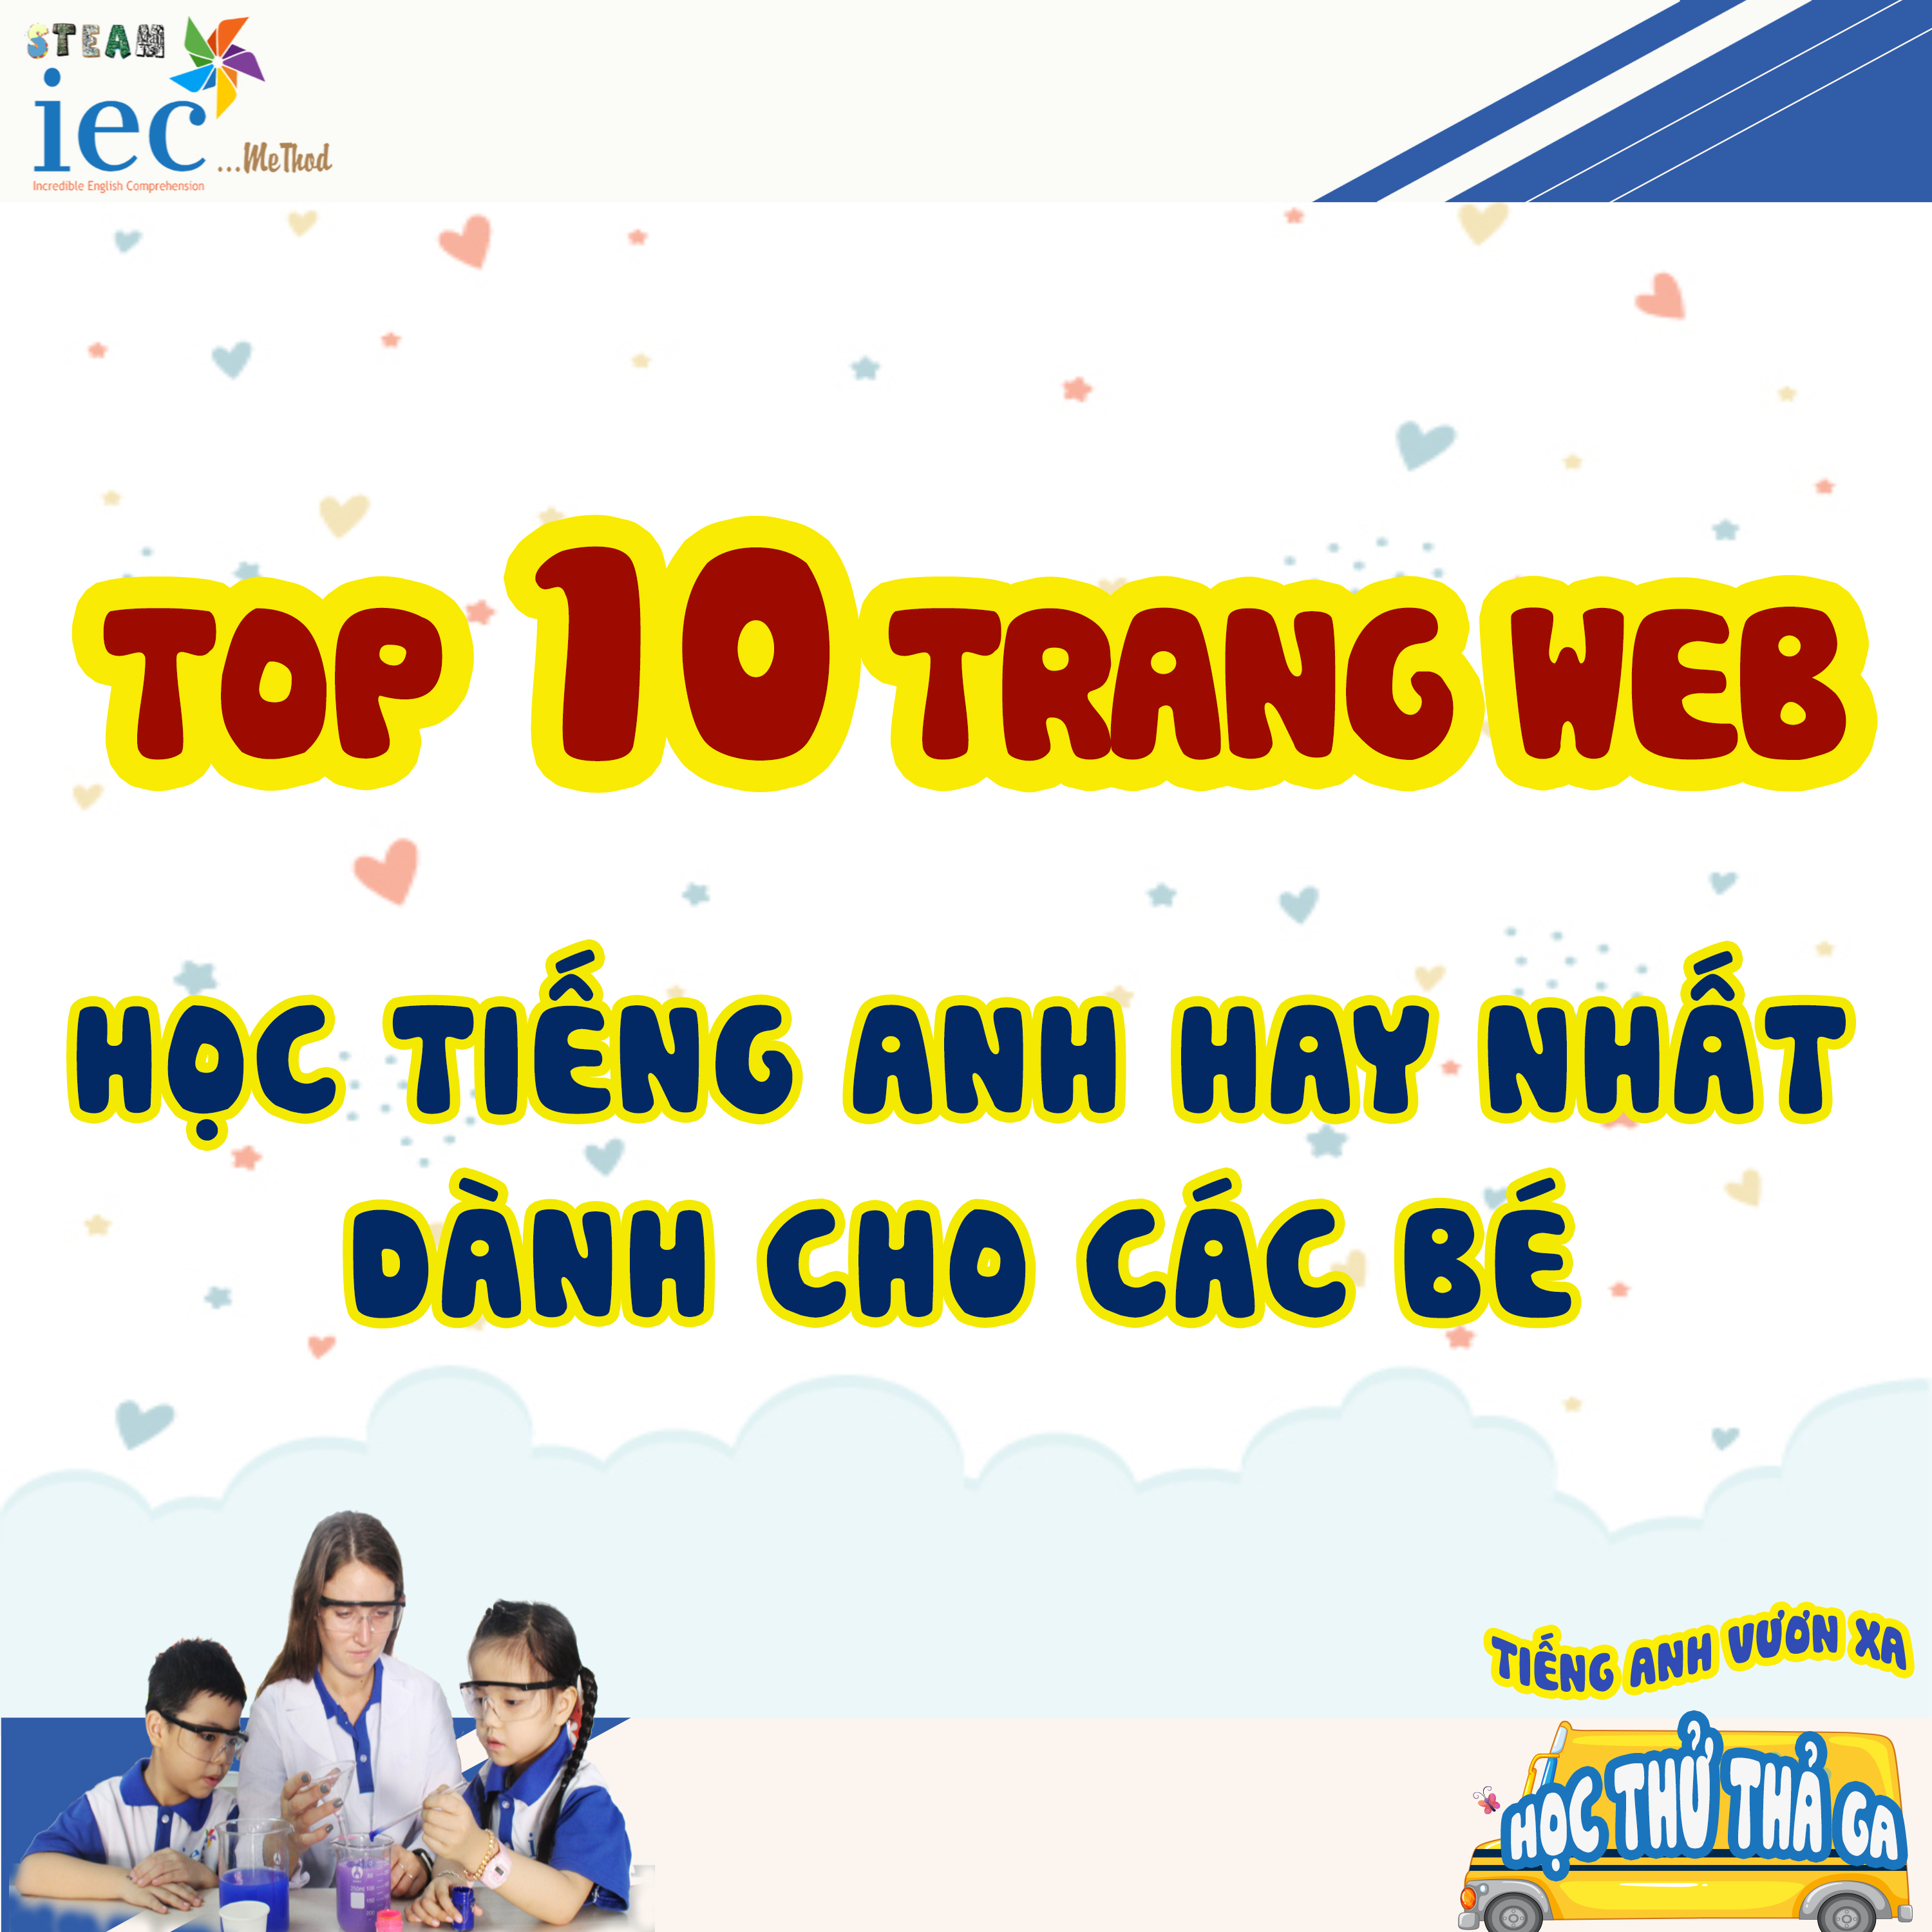 TOP 10 TRANG WEB HỌC TIẾNG ANH CHO BÉ 